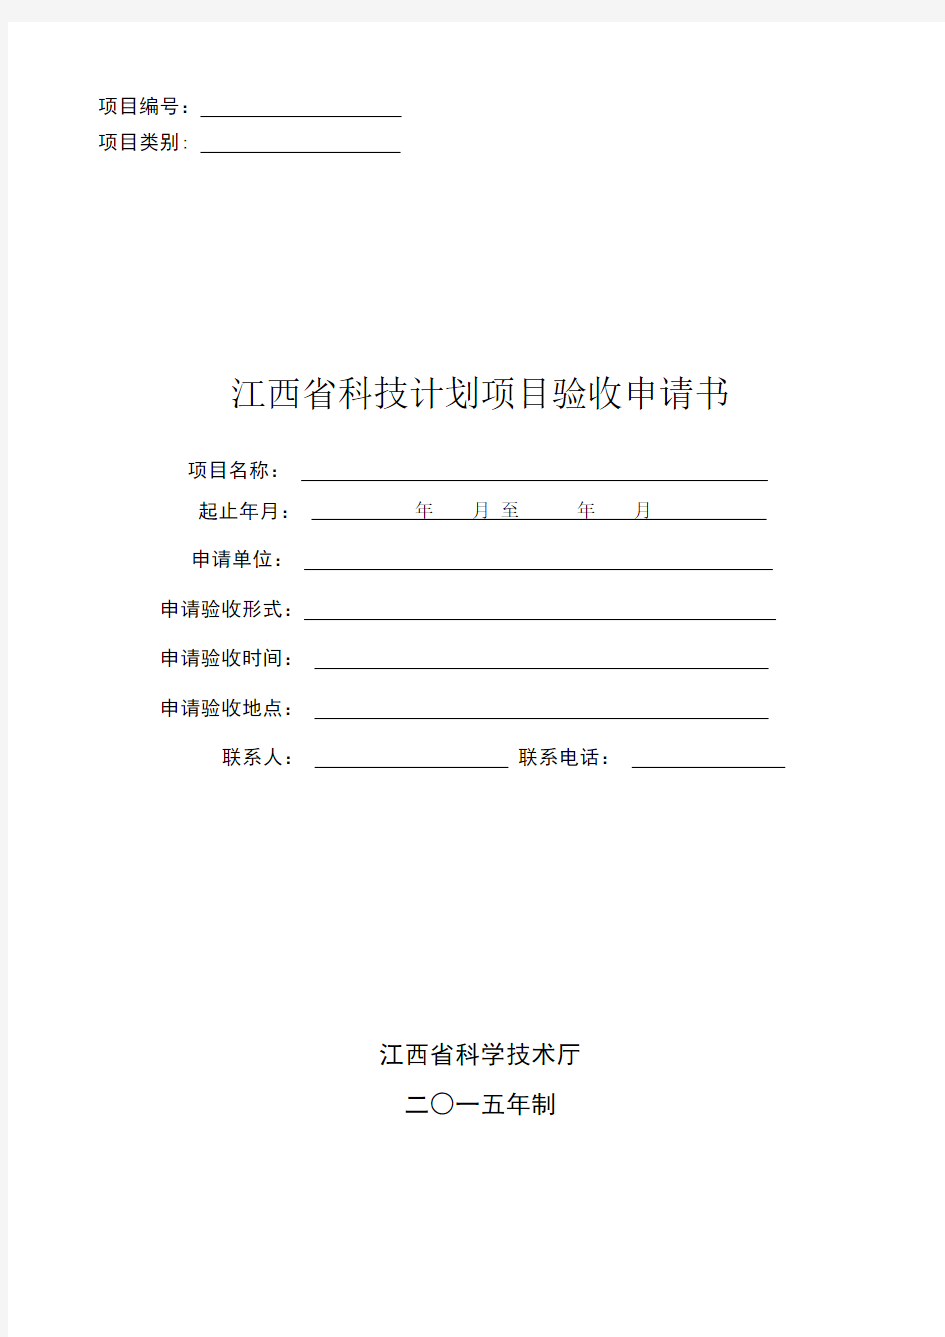 江西省科技计划项目验收申请书(2015年制)